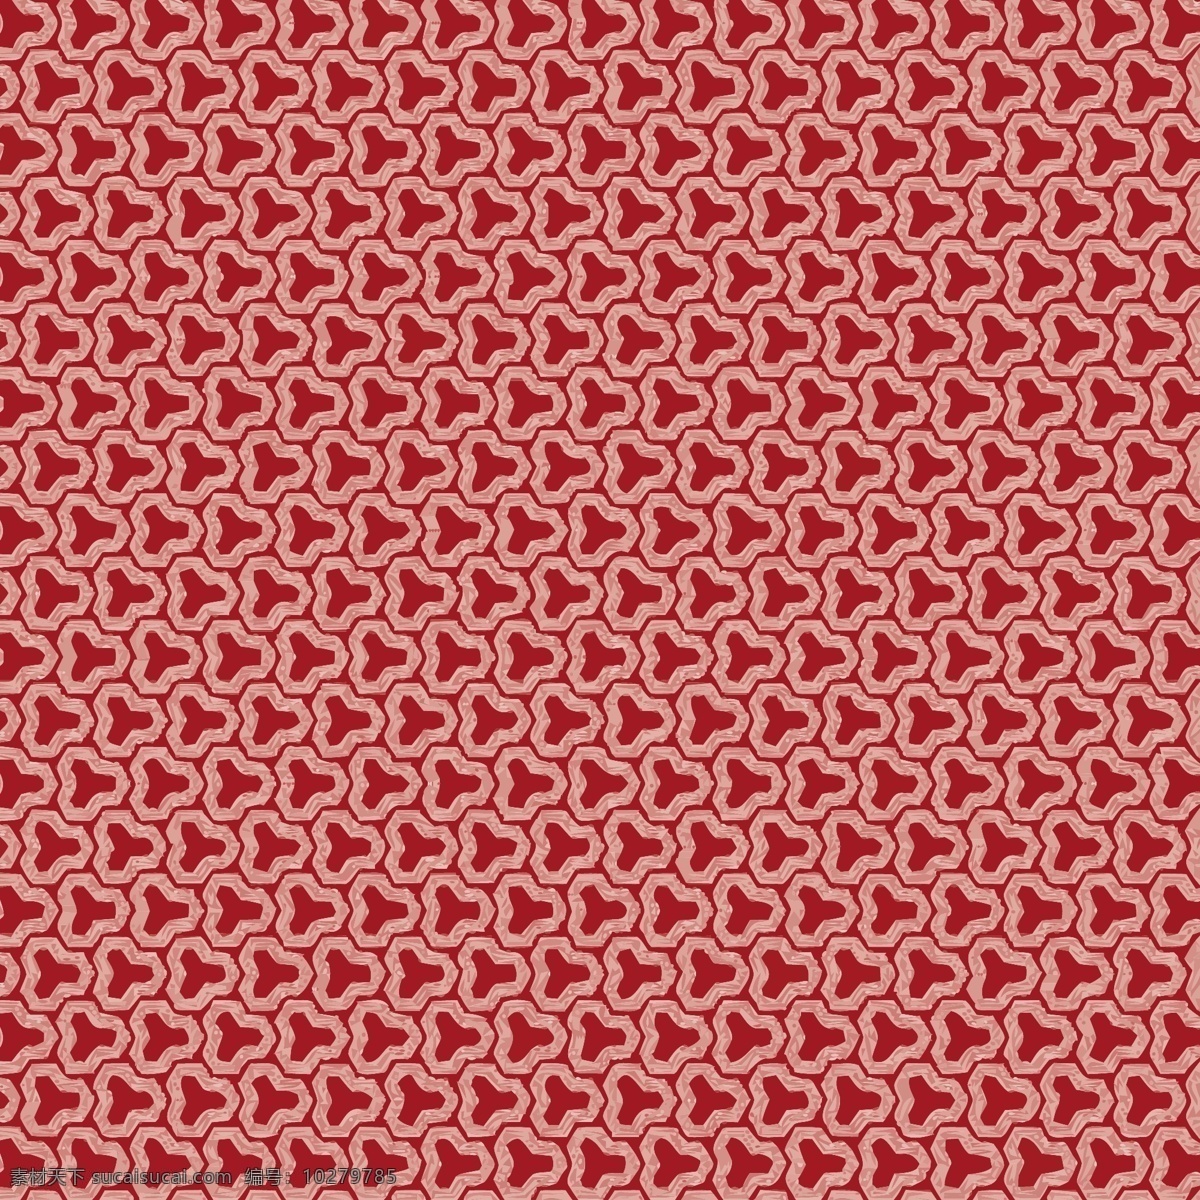 红色几何图案 背景 图案 抽象背景 抽象 纹理 红色 三角形 红色背景 形状 壁纸 抽象设计 图案背景 三角形背景 背景设计 纹理背景 三角形图案 抽象图案 抽象形状 背景纹理 洋红色